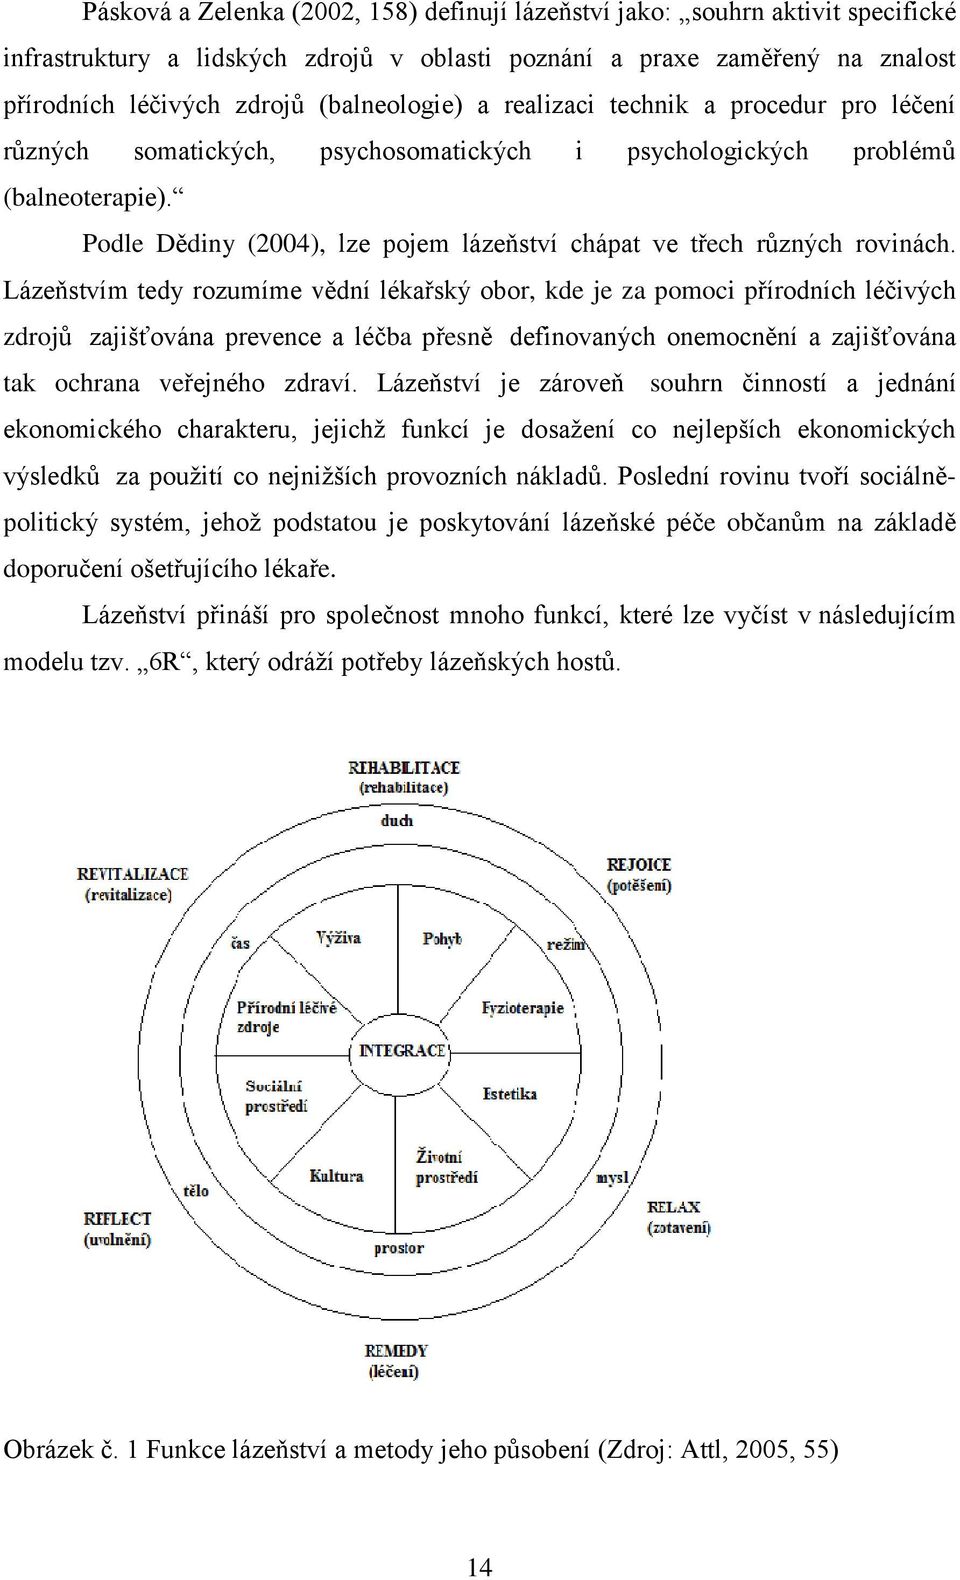 Podle Dědiny (2004), lze pojem lázeňství chápat ve třech různých rovinách.